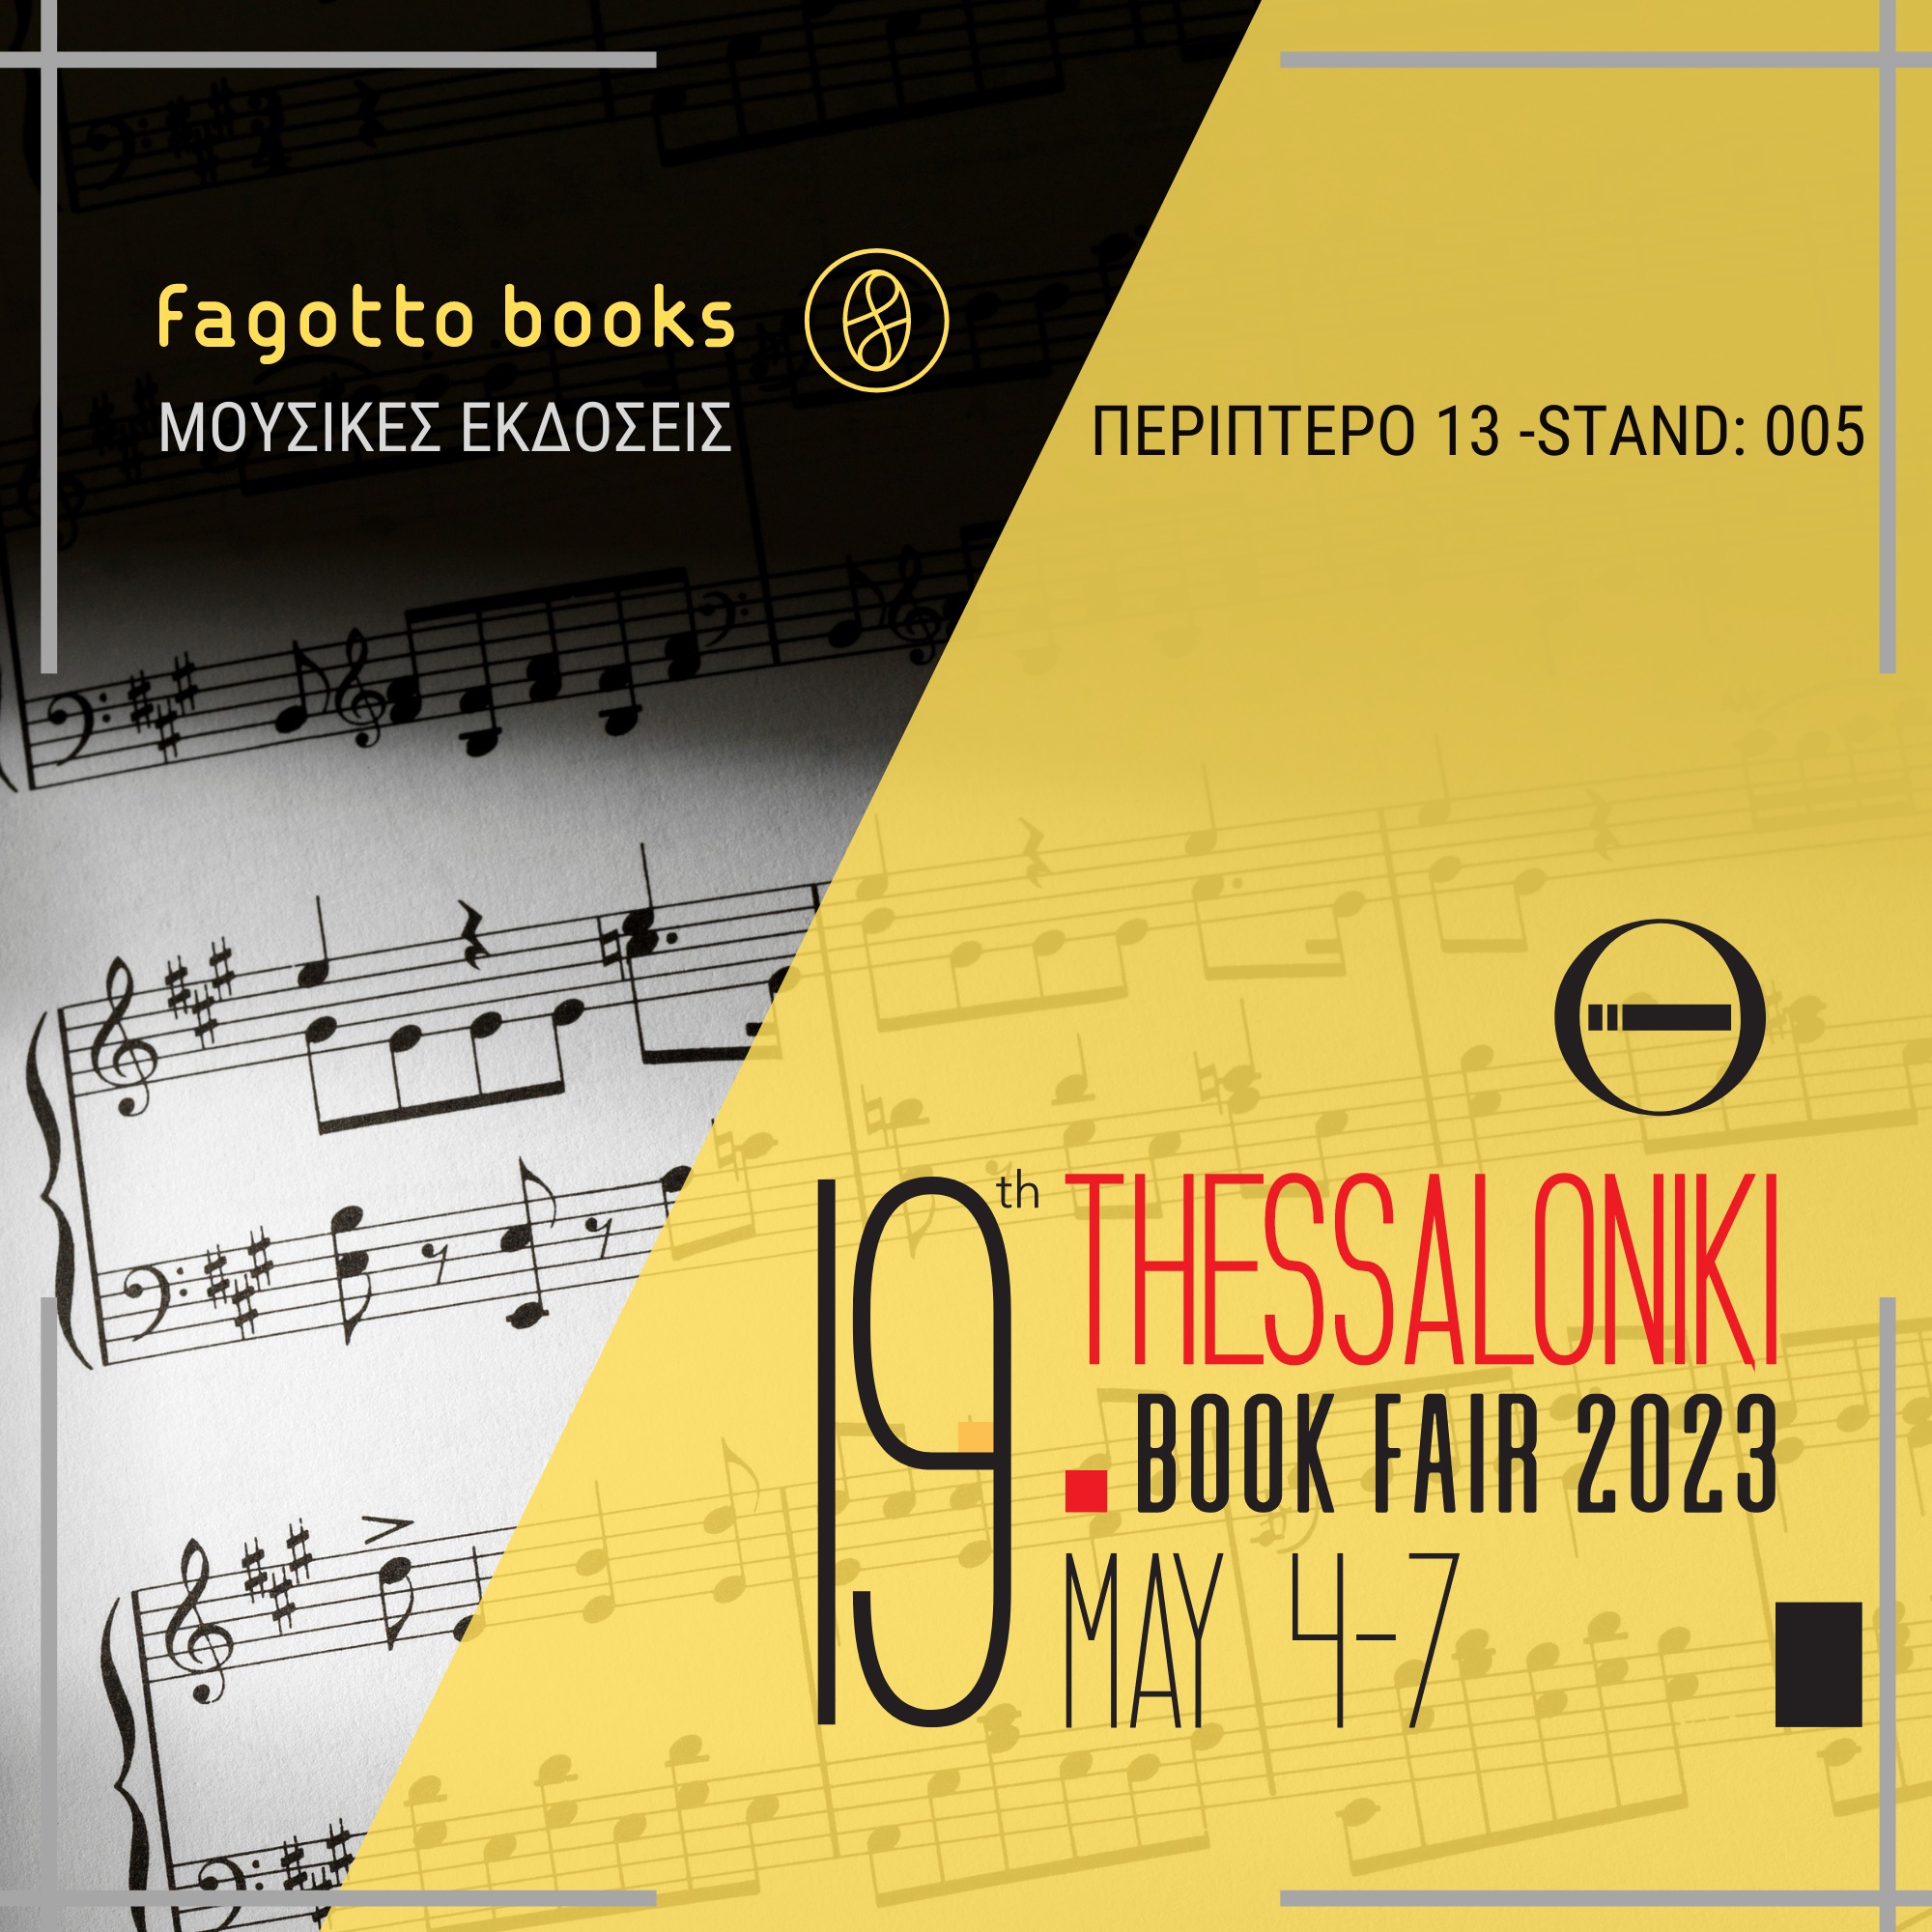 Οι εκδόσεις Fagottobooks στη 19η Διεθνή Έκθεση Βιβλίου Θεσσαλονίκης